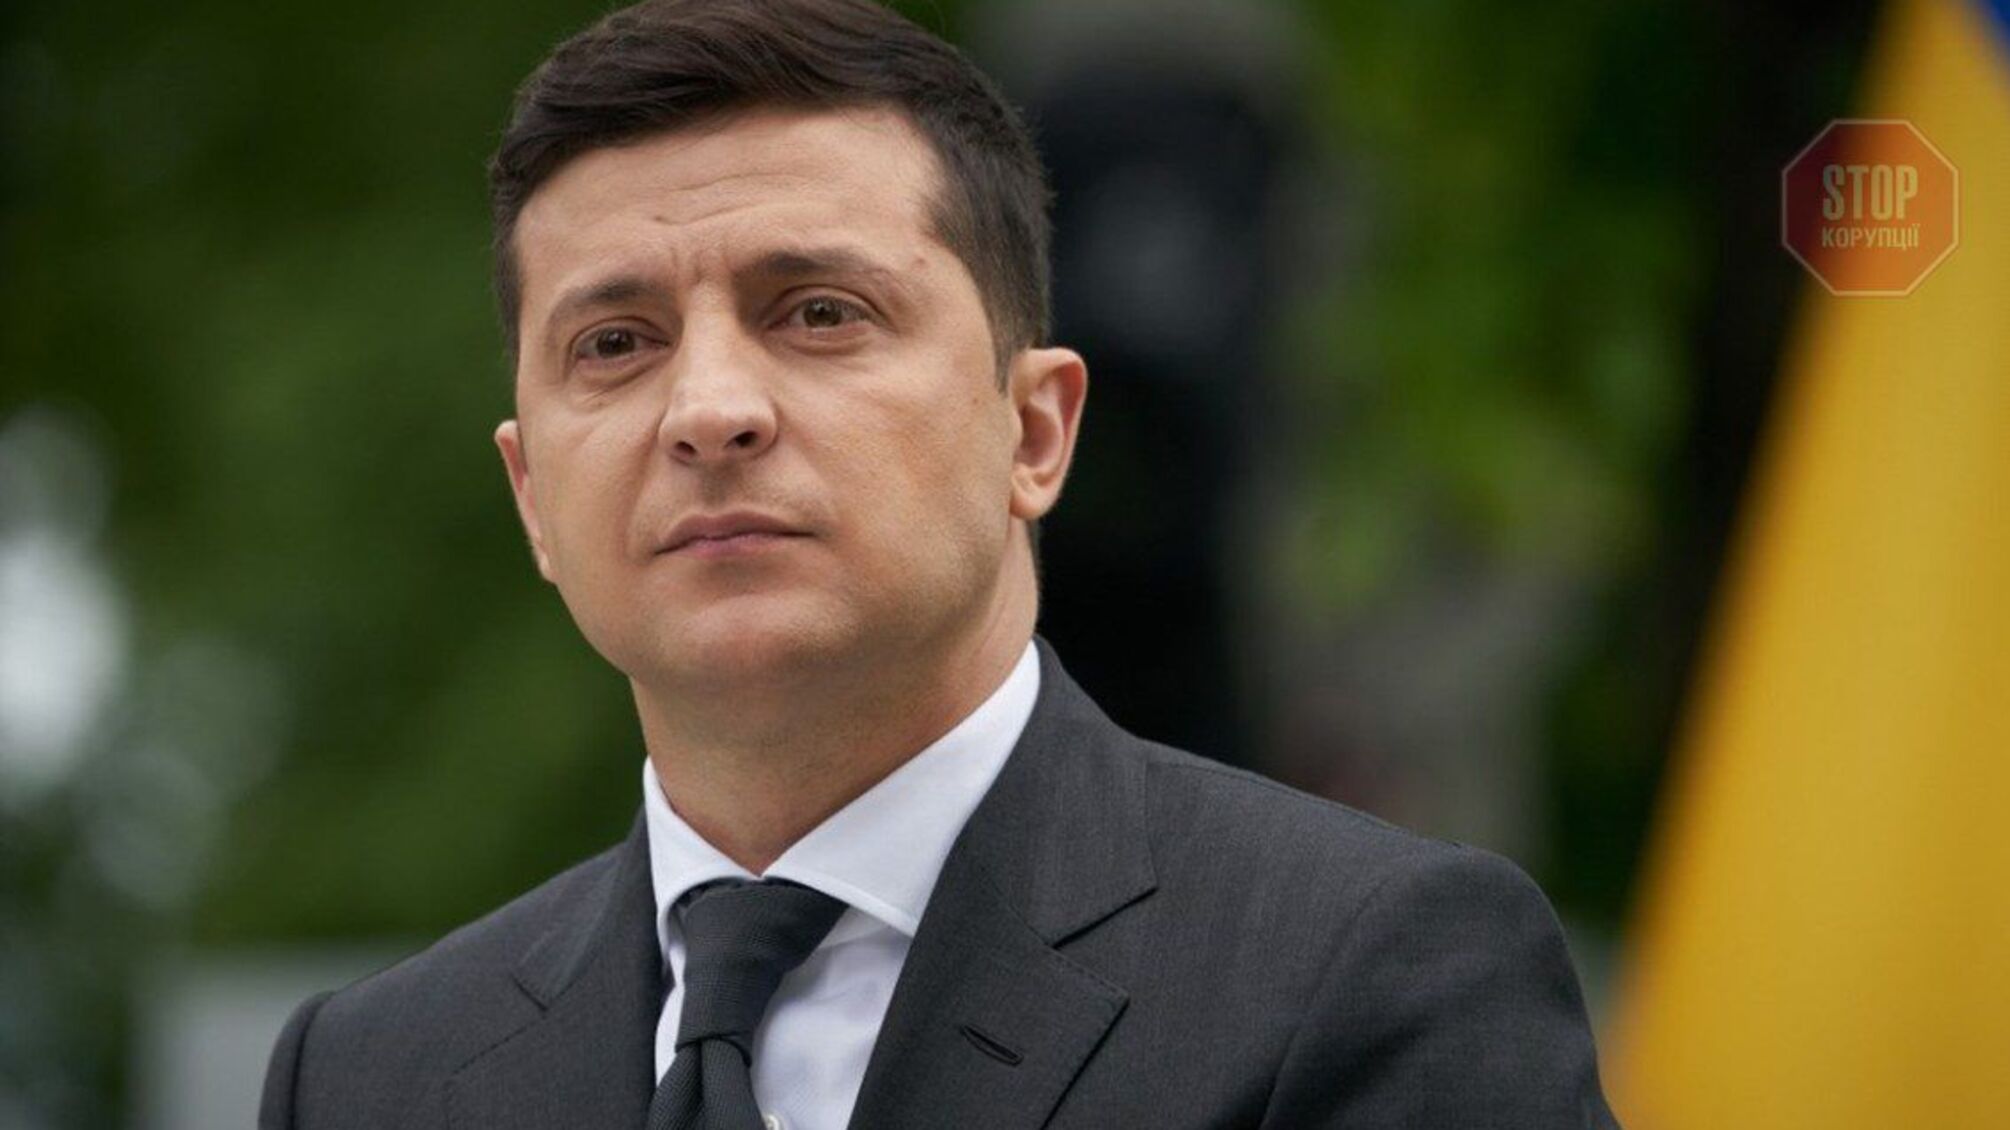 Зеленский позвонил в Грузию впервые после задержания Саакашвили